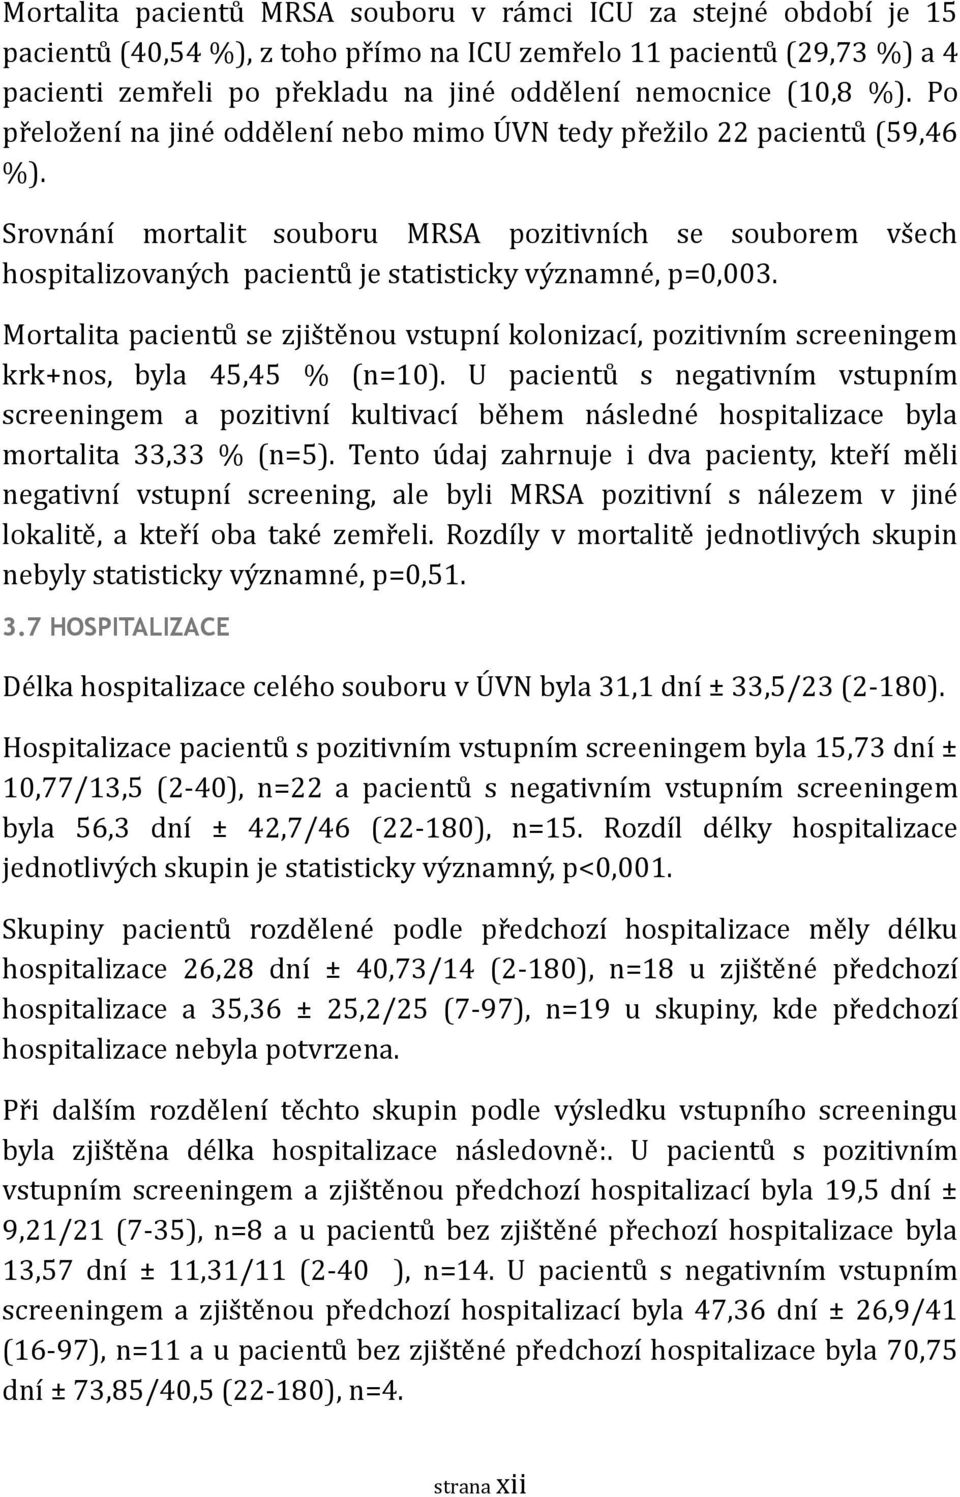 Srovna ní mortalit souboru MRSA pozitivních se souborem vs ech hospitalizovany ch pacientu je statisticky vy znamne, p=0,003.